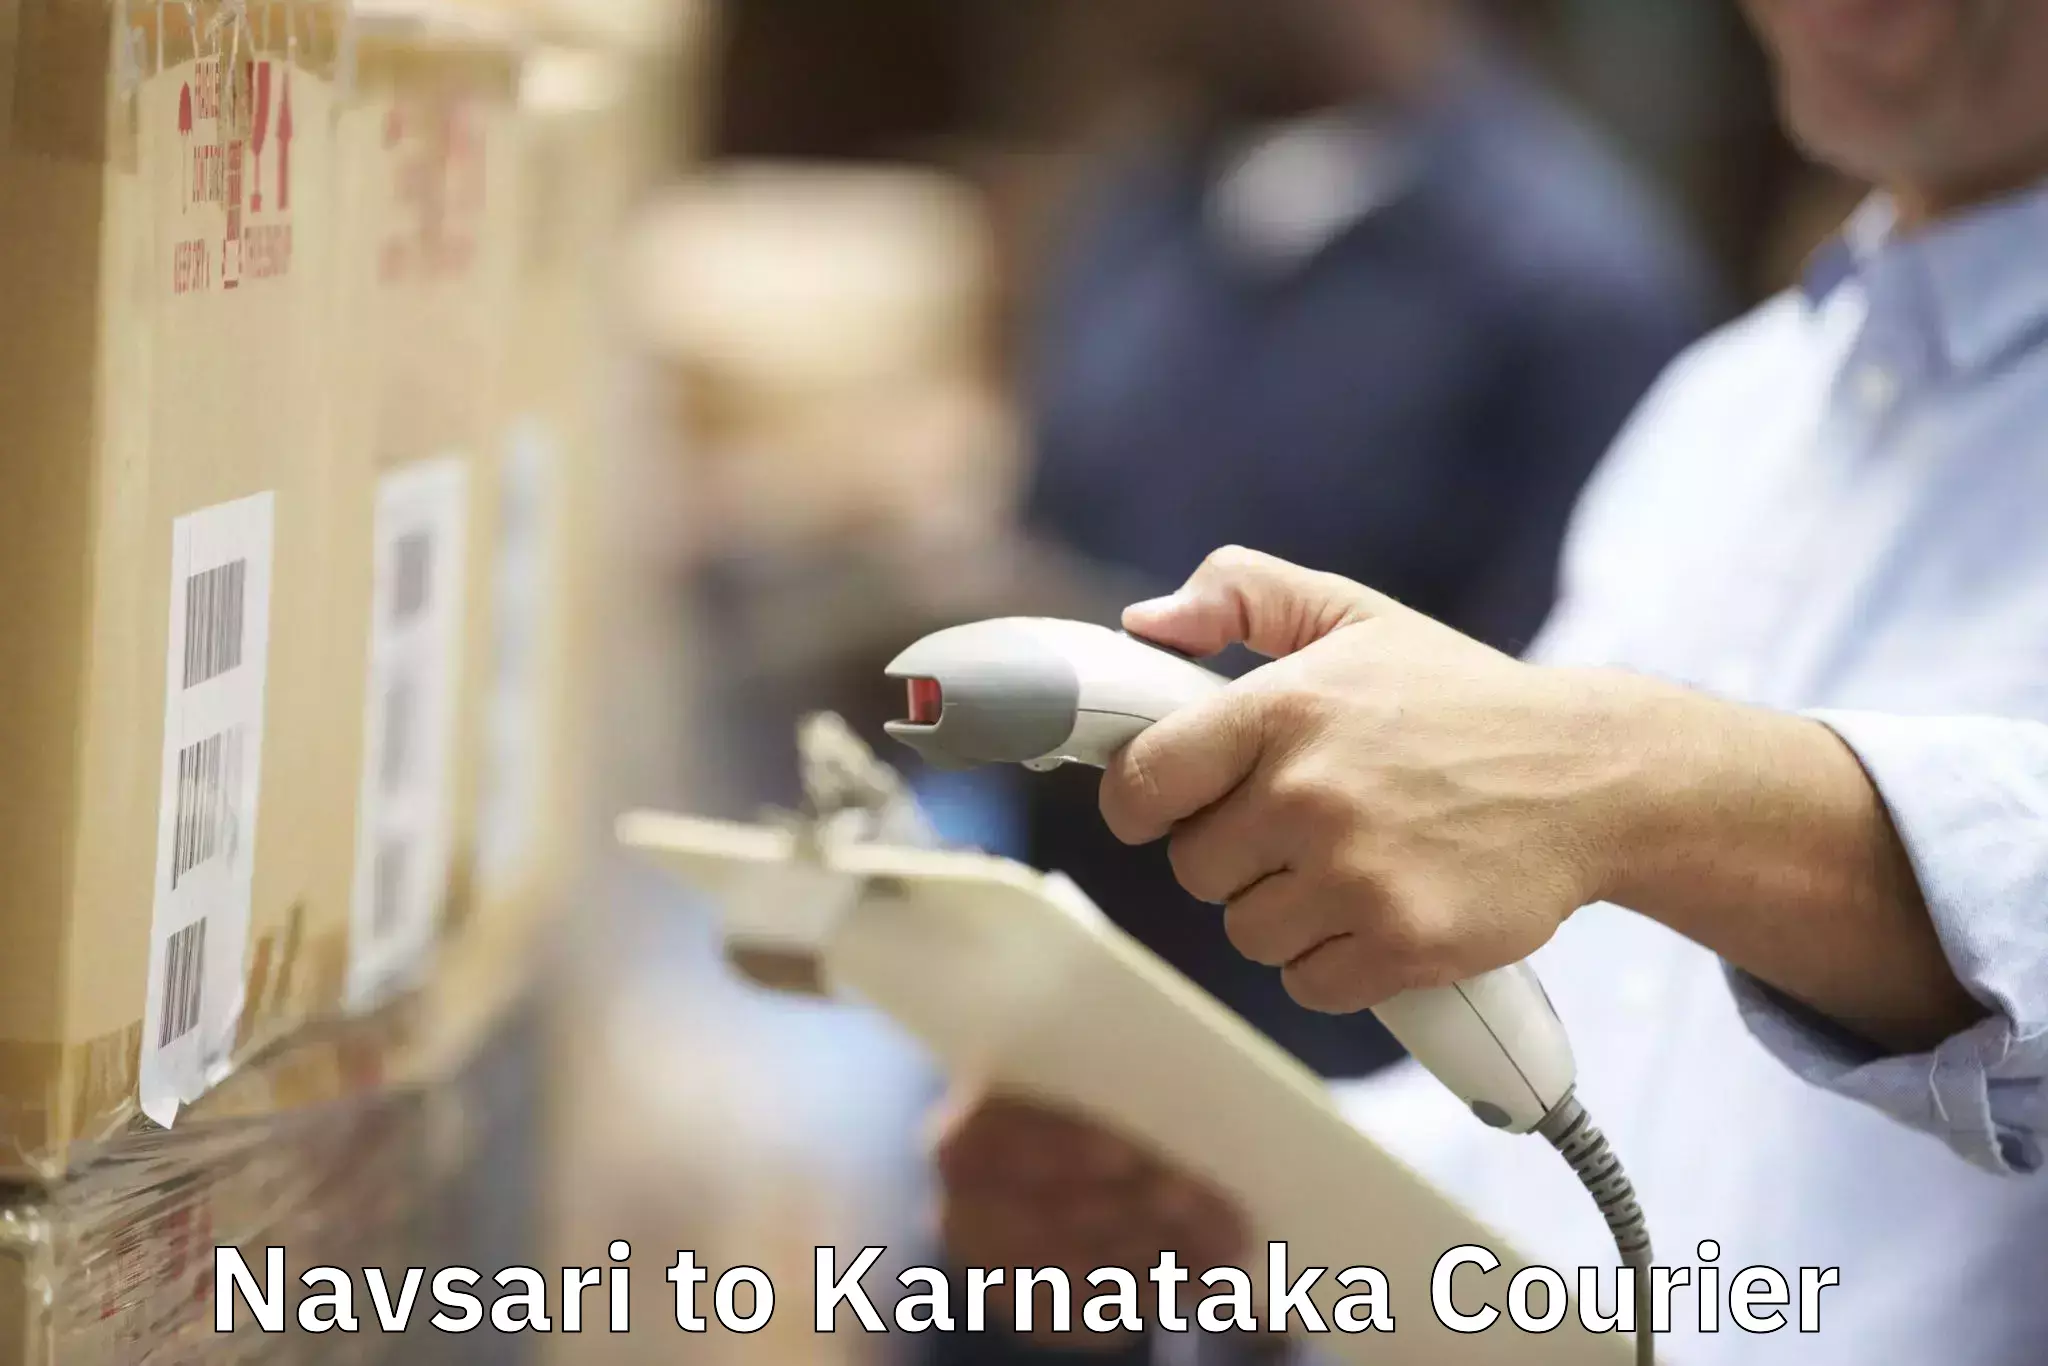 Furniture transport experts Navsari to Karnataka